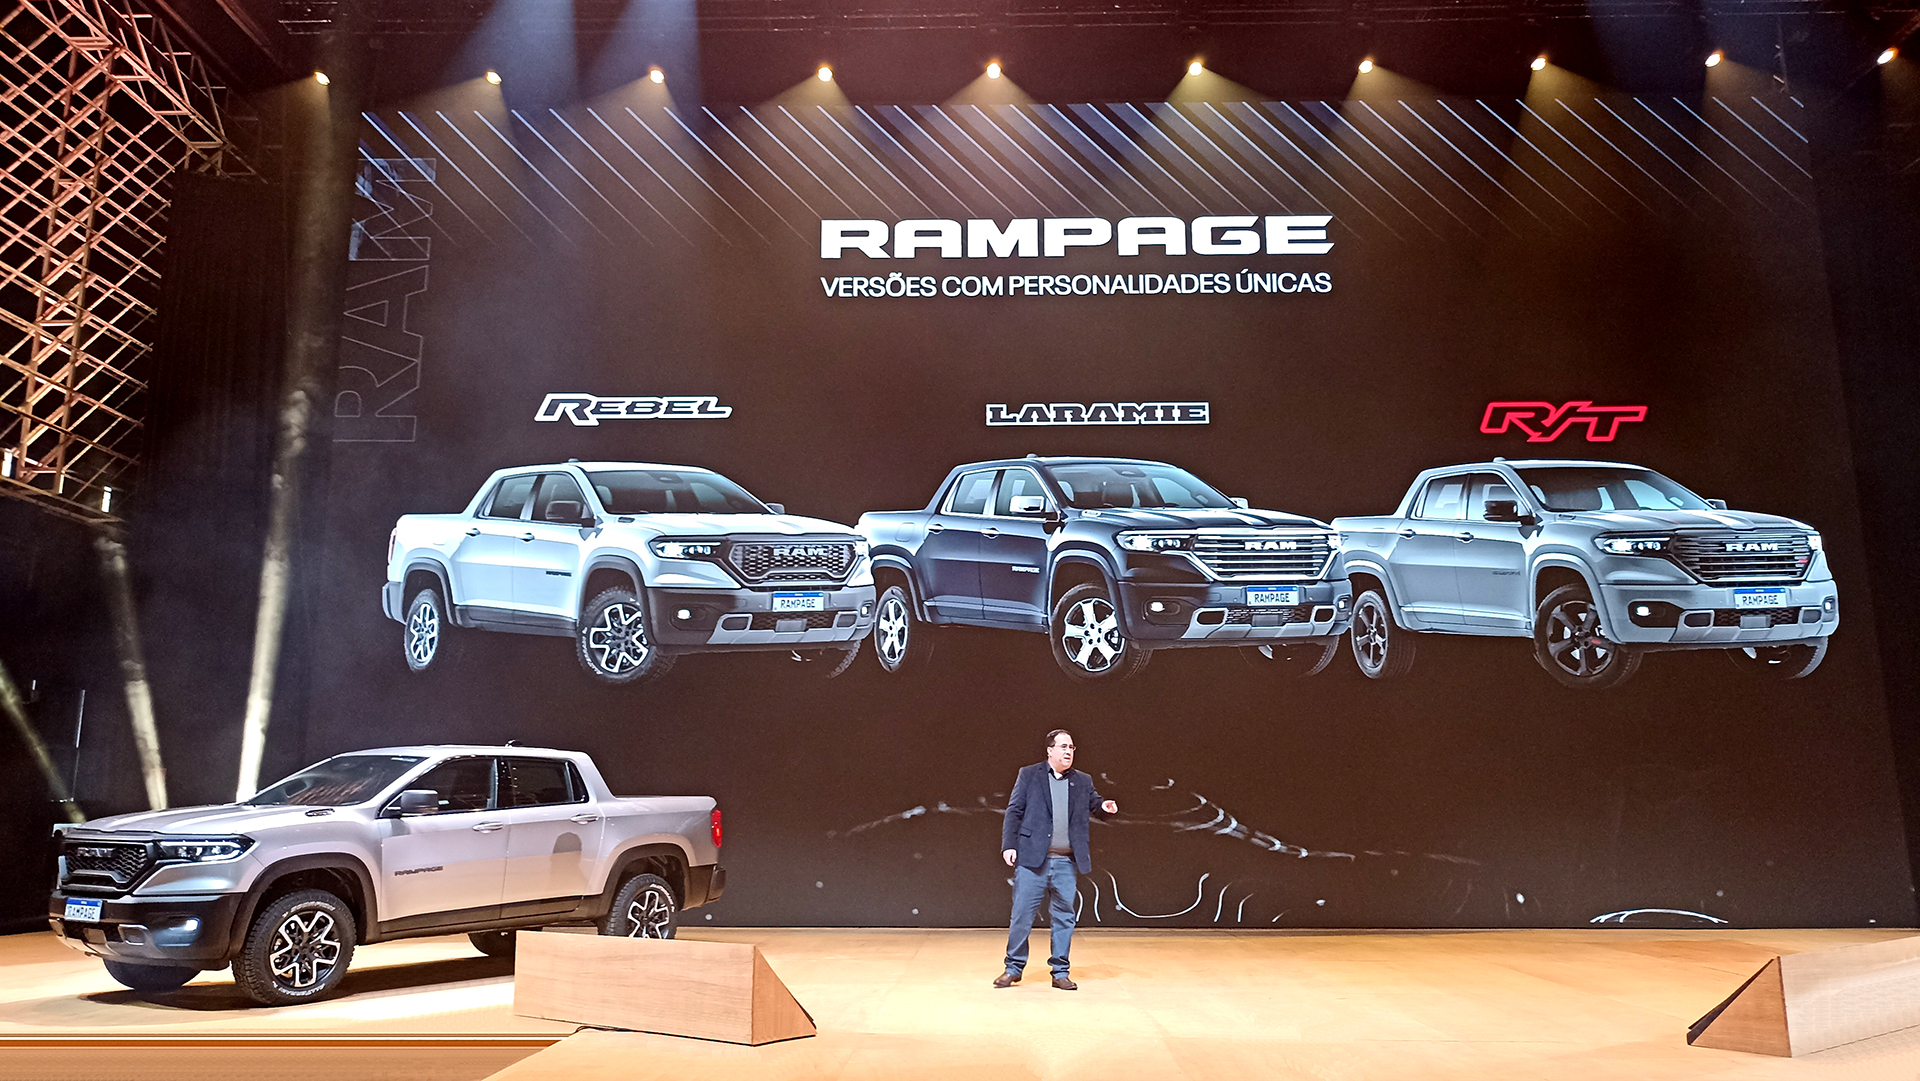 Juliano Machado, Brand de RAM América Latina, muestra las tres versiones de Rampage: Rebel, Laramie y R/T